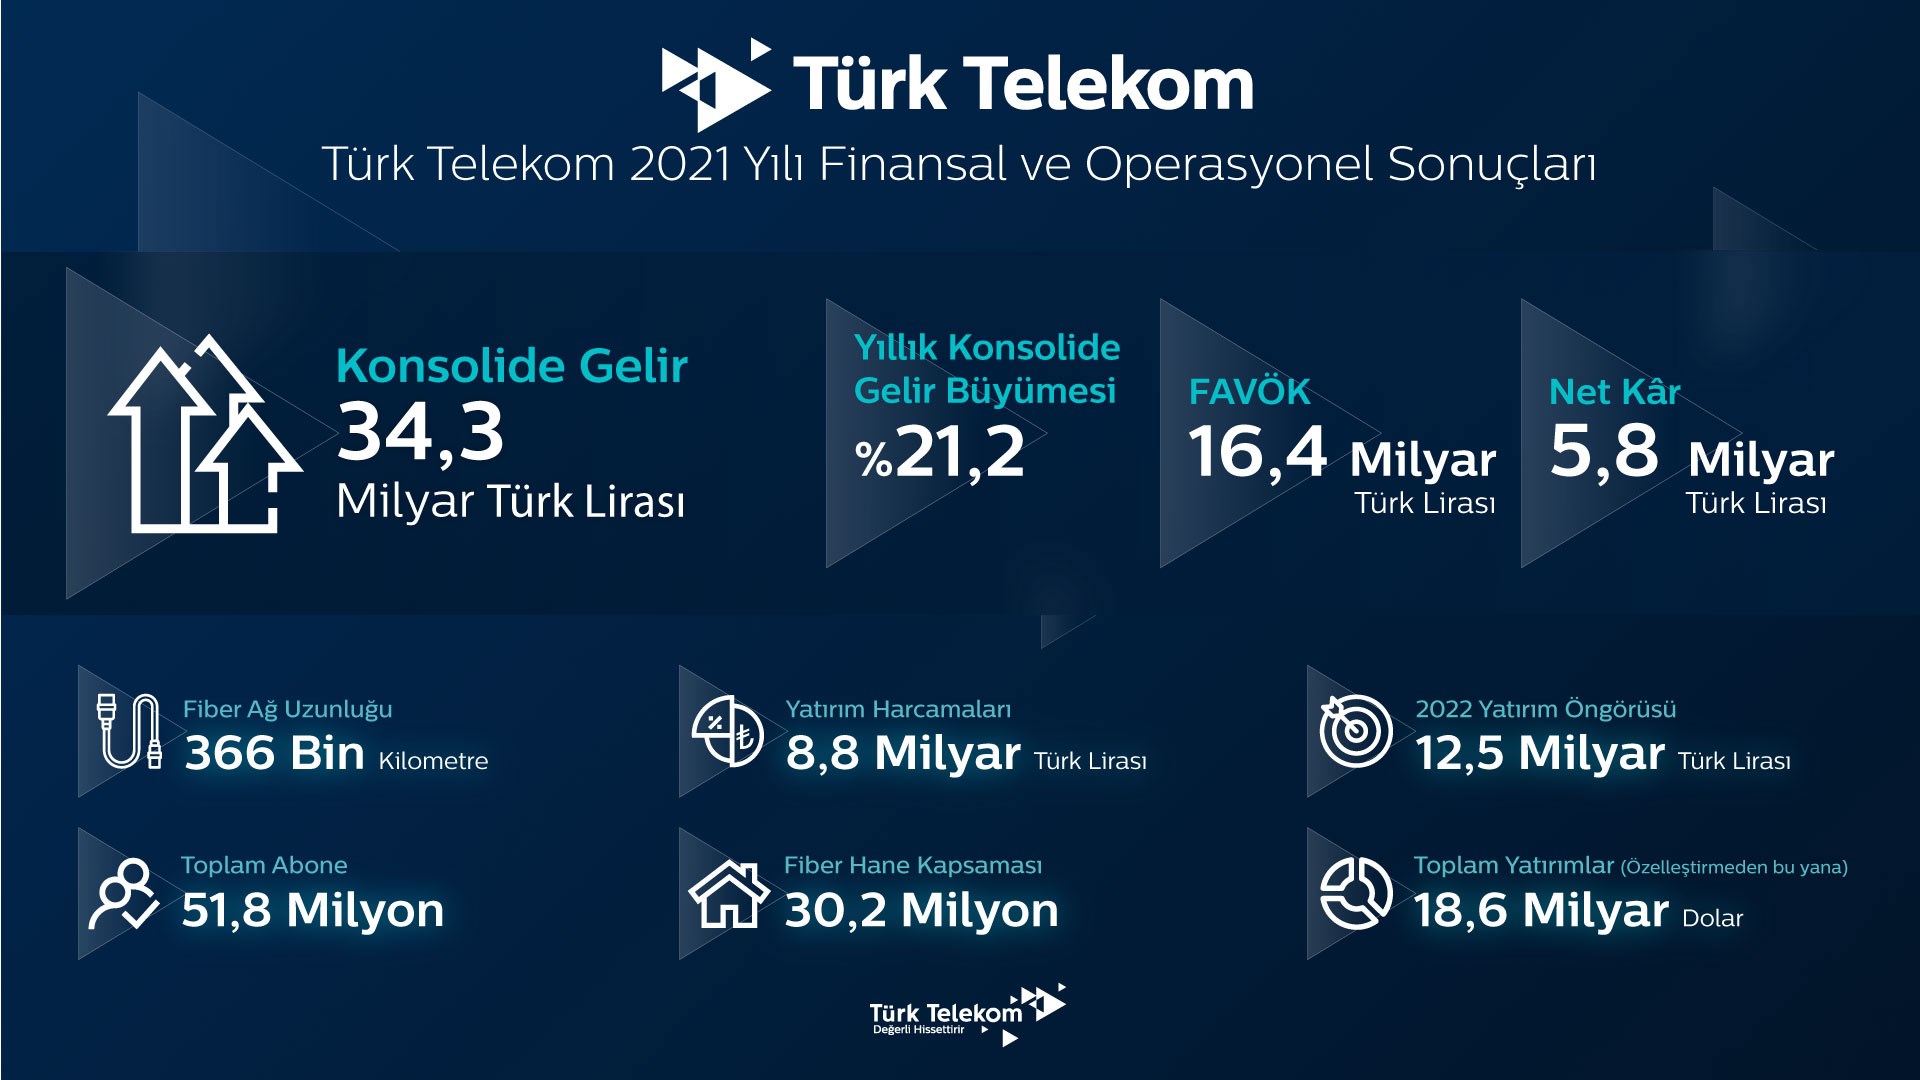 Türk Telekom'un 2021 yılı finansal ve operasyonel sonuçları